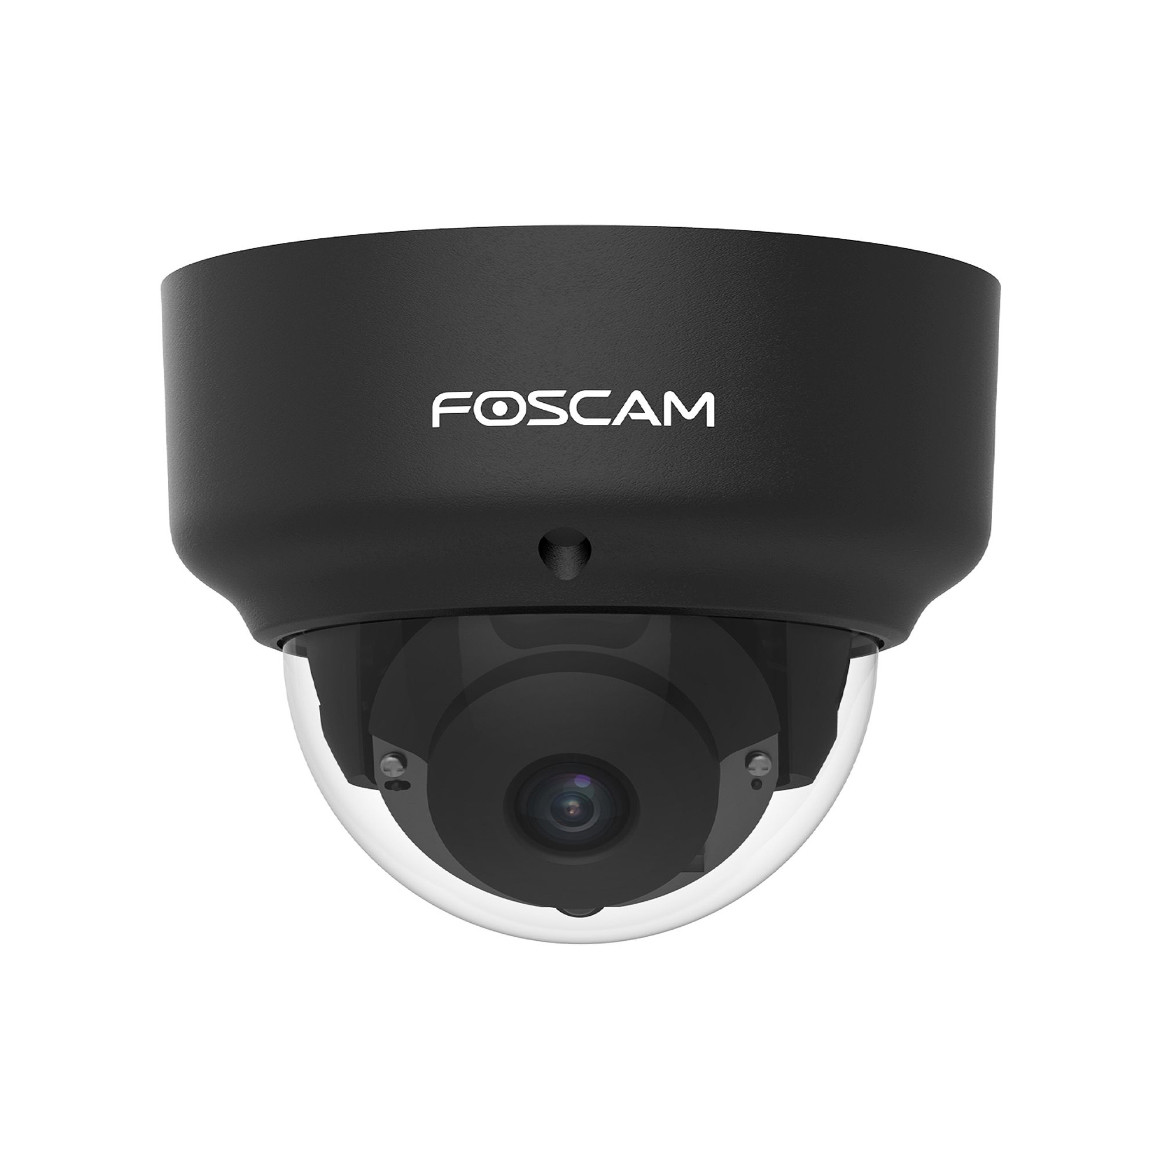 foscam camera software for mac